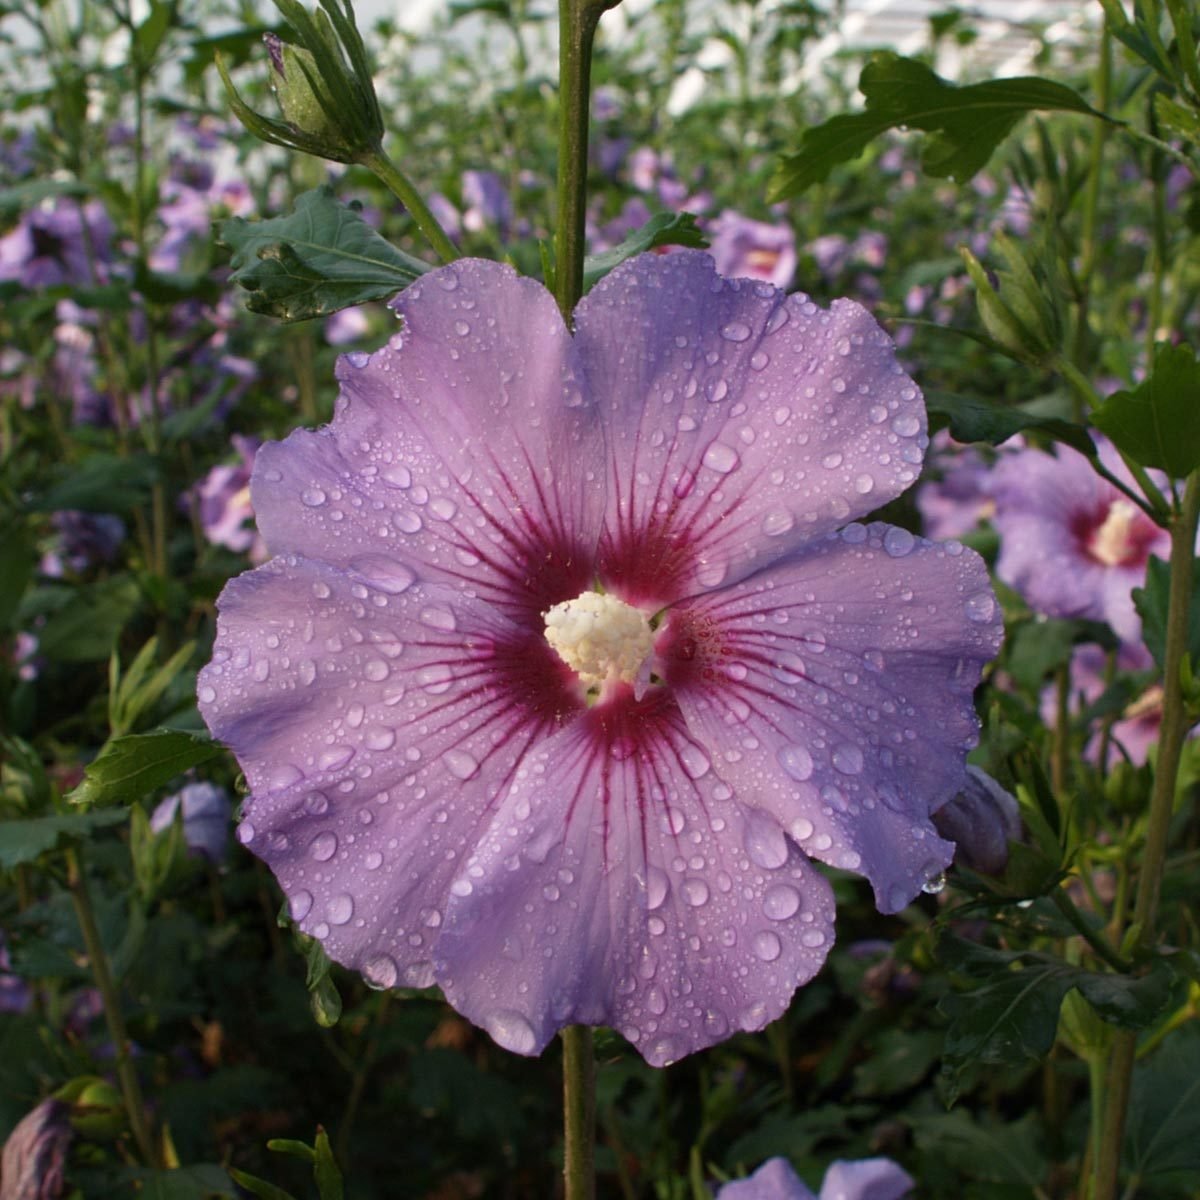 Garten-Hibiskus 'Marina', violettblau, 40 - 60cm hoch, Topf 5 l